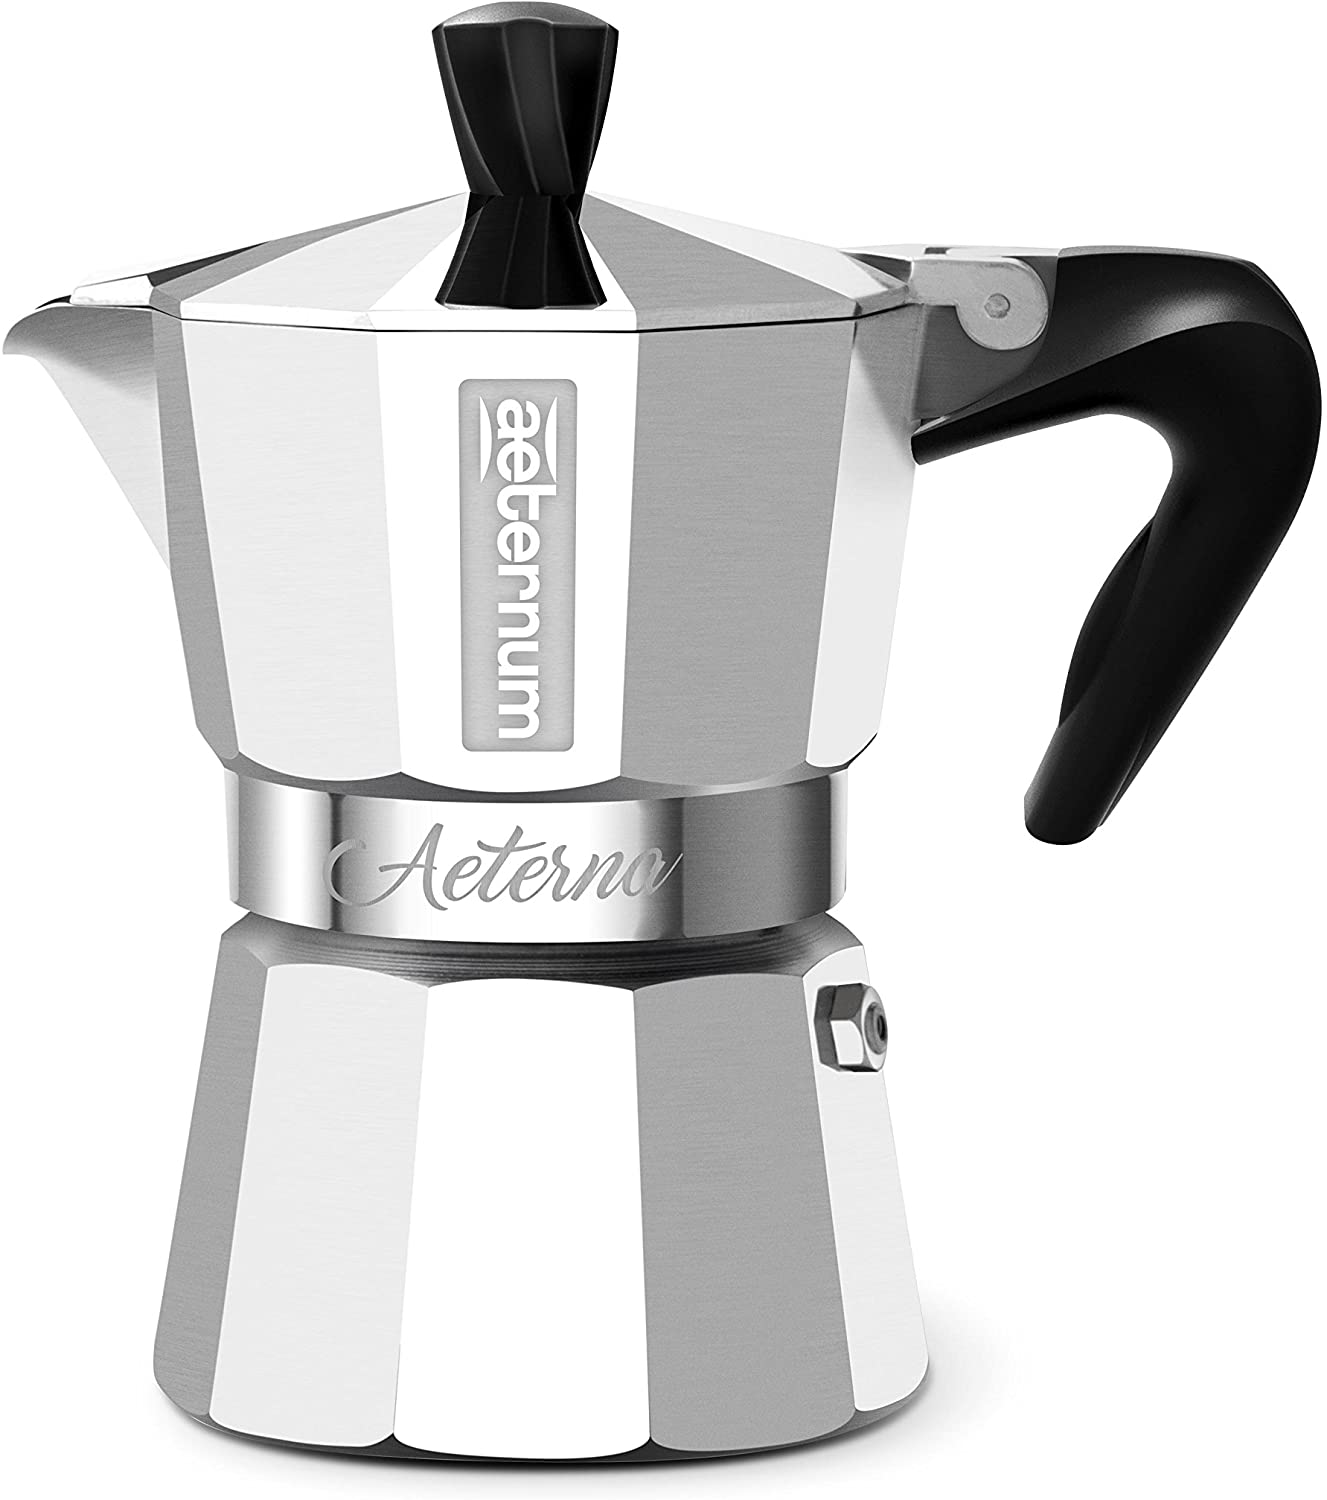 Bialetti 005091 Aeterna Espresso Maker for 1 Cup, Aluminium, Silver, 30 x 20 x 15 cm